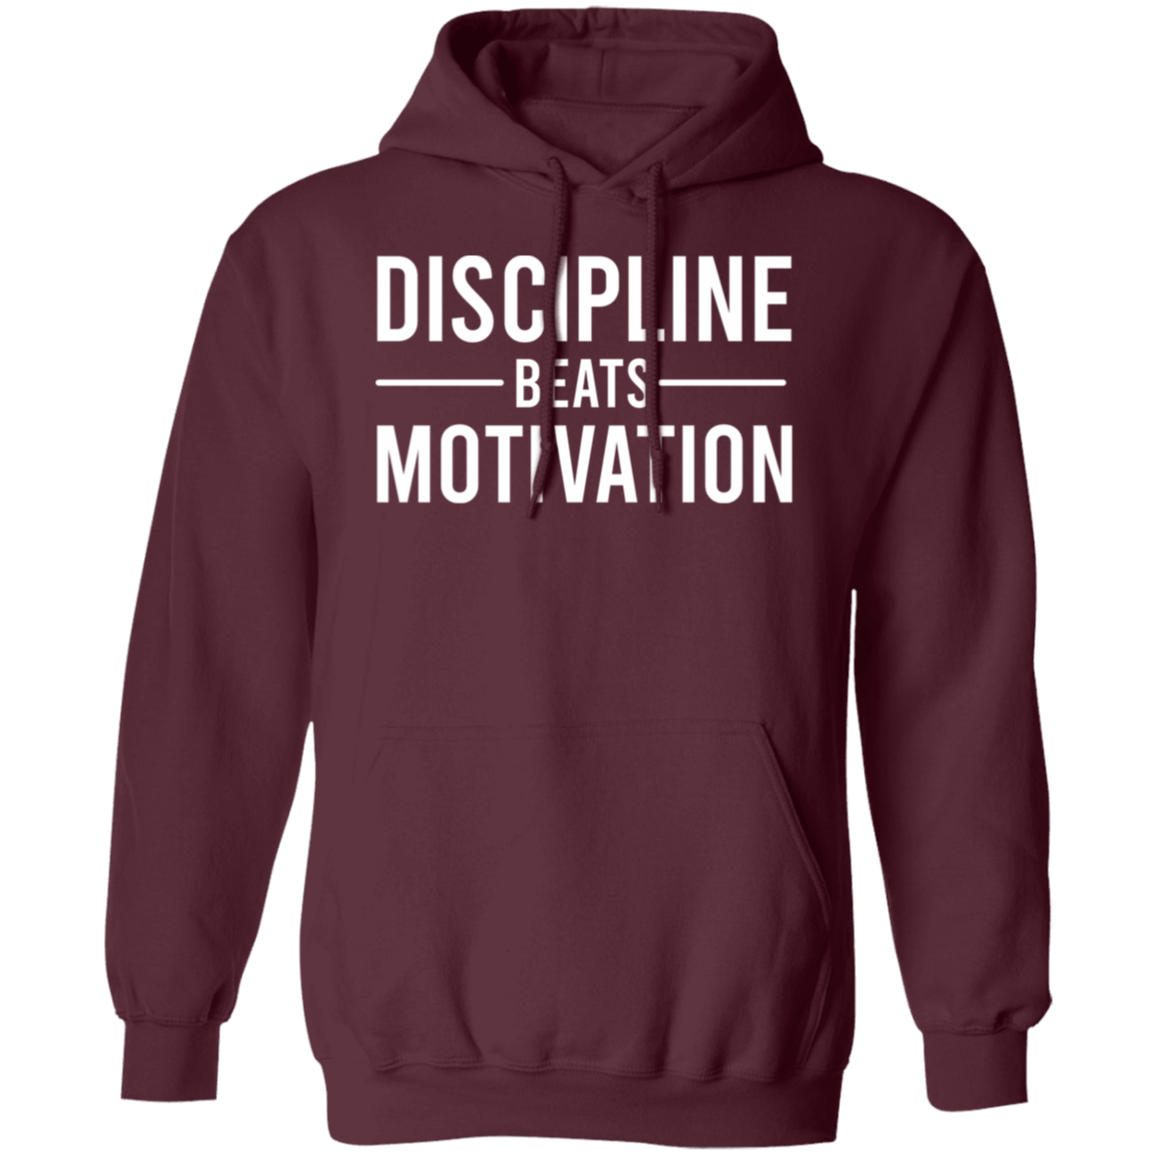 Discipline Beats Motivation  Premium Unisex Hoodies